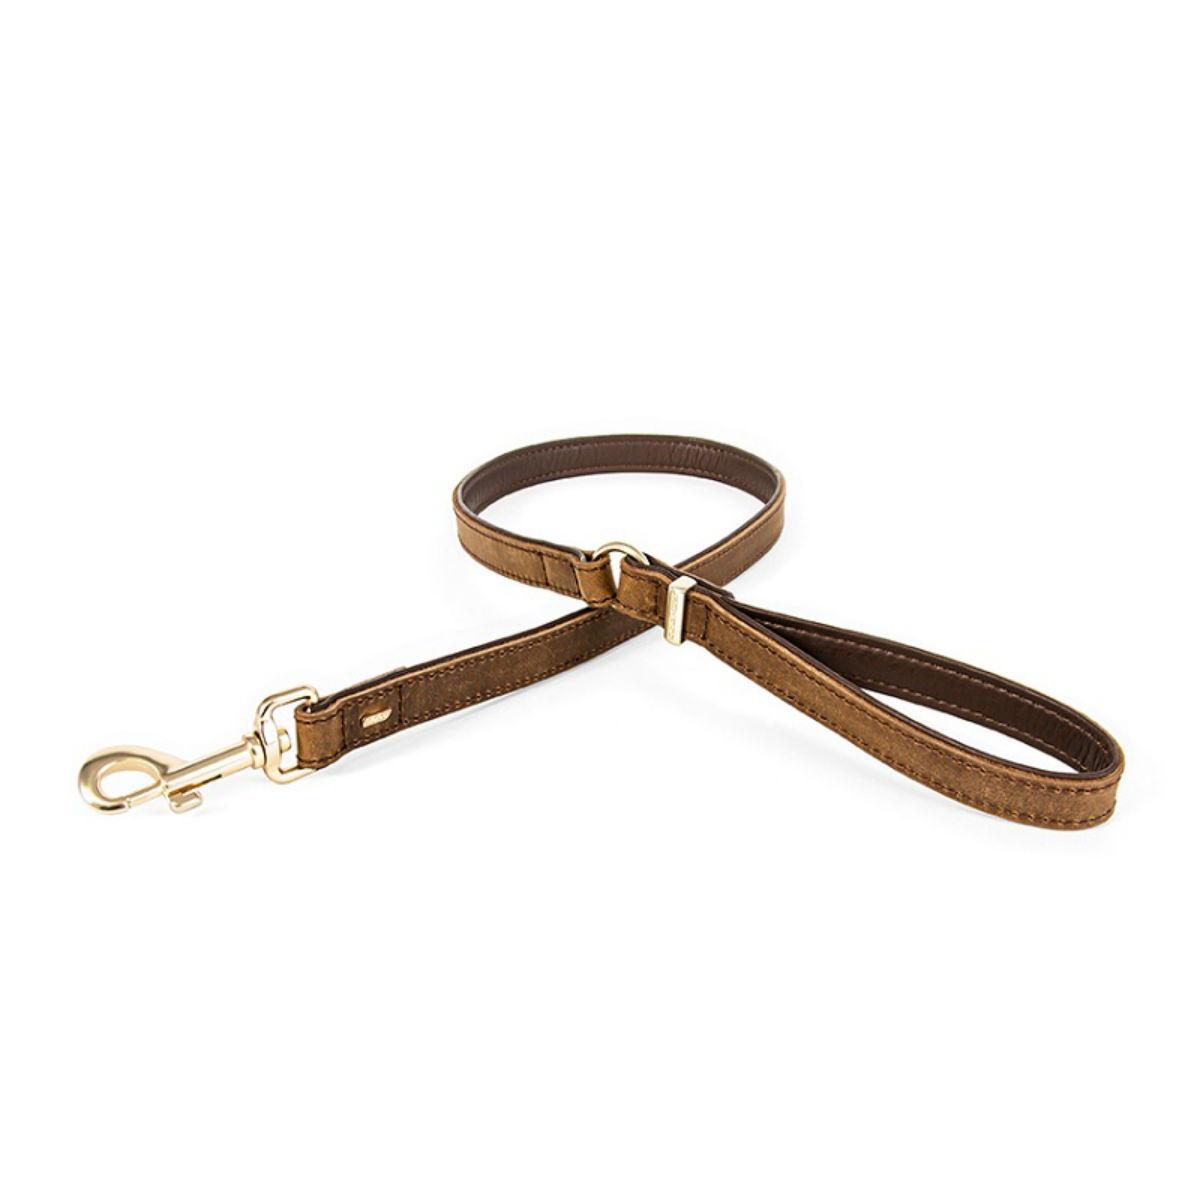 EzyDog Oxford Leather Dog Leash - Brown